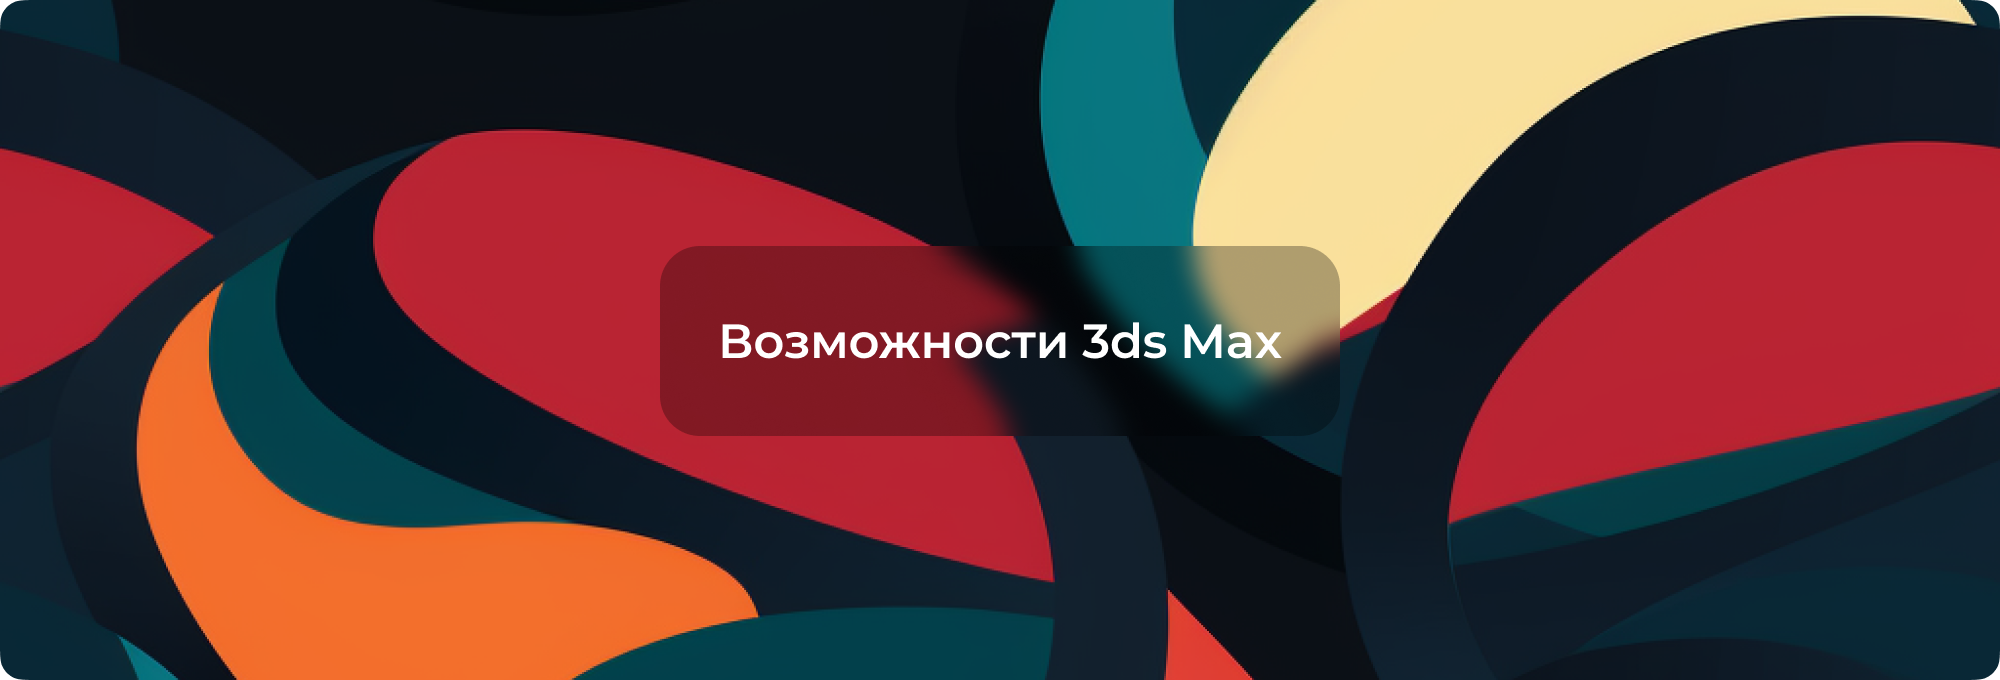 Все возможности 3ds Max: от создания до рендеринга